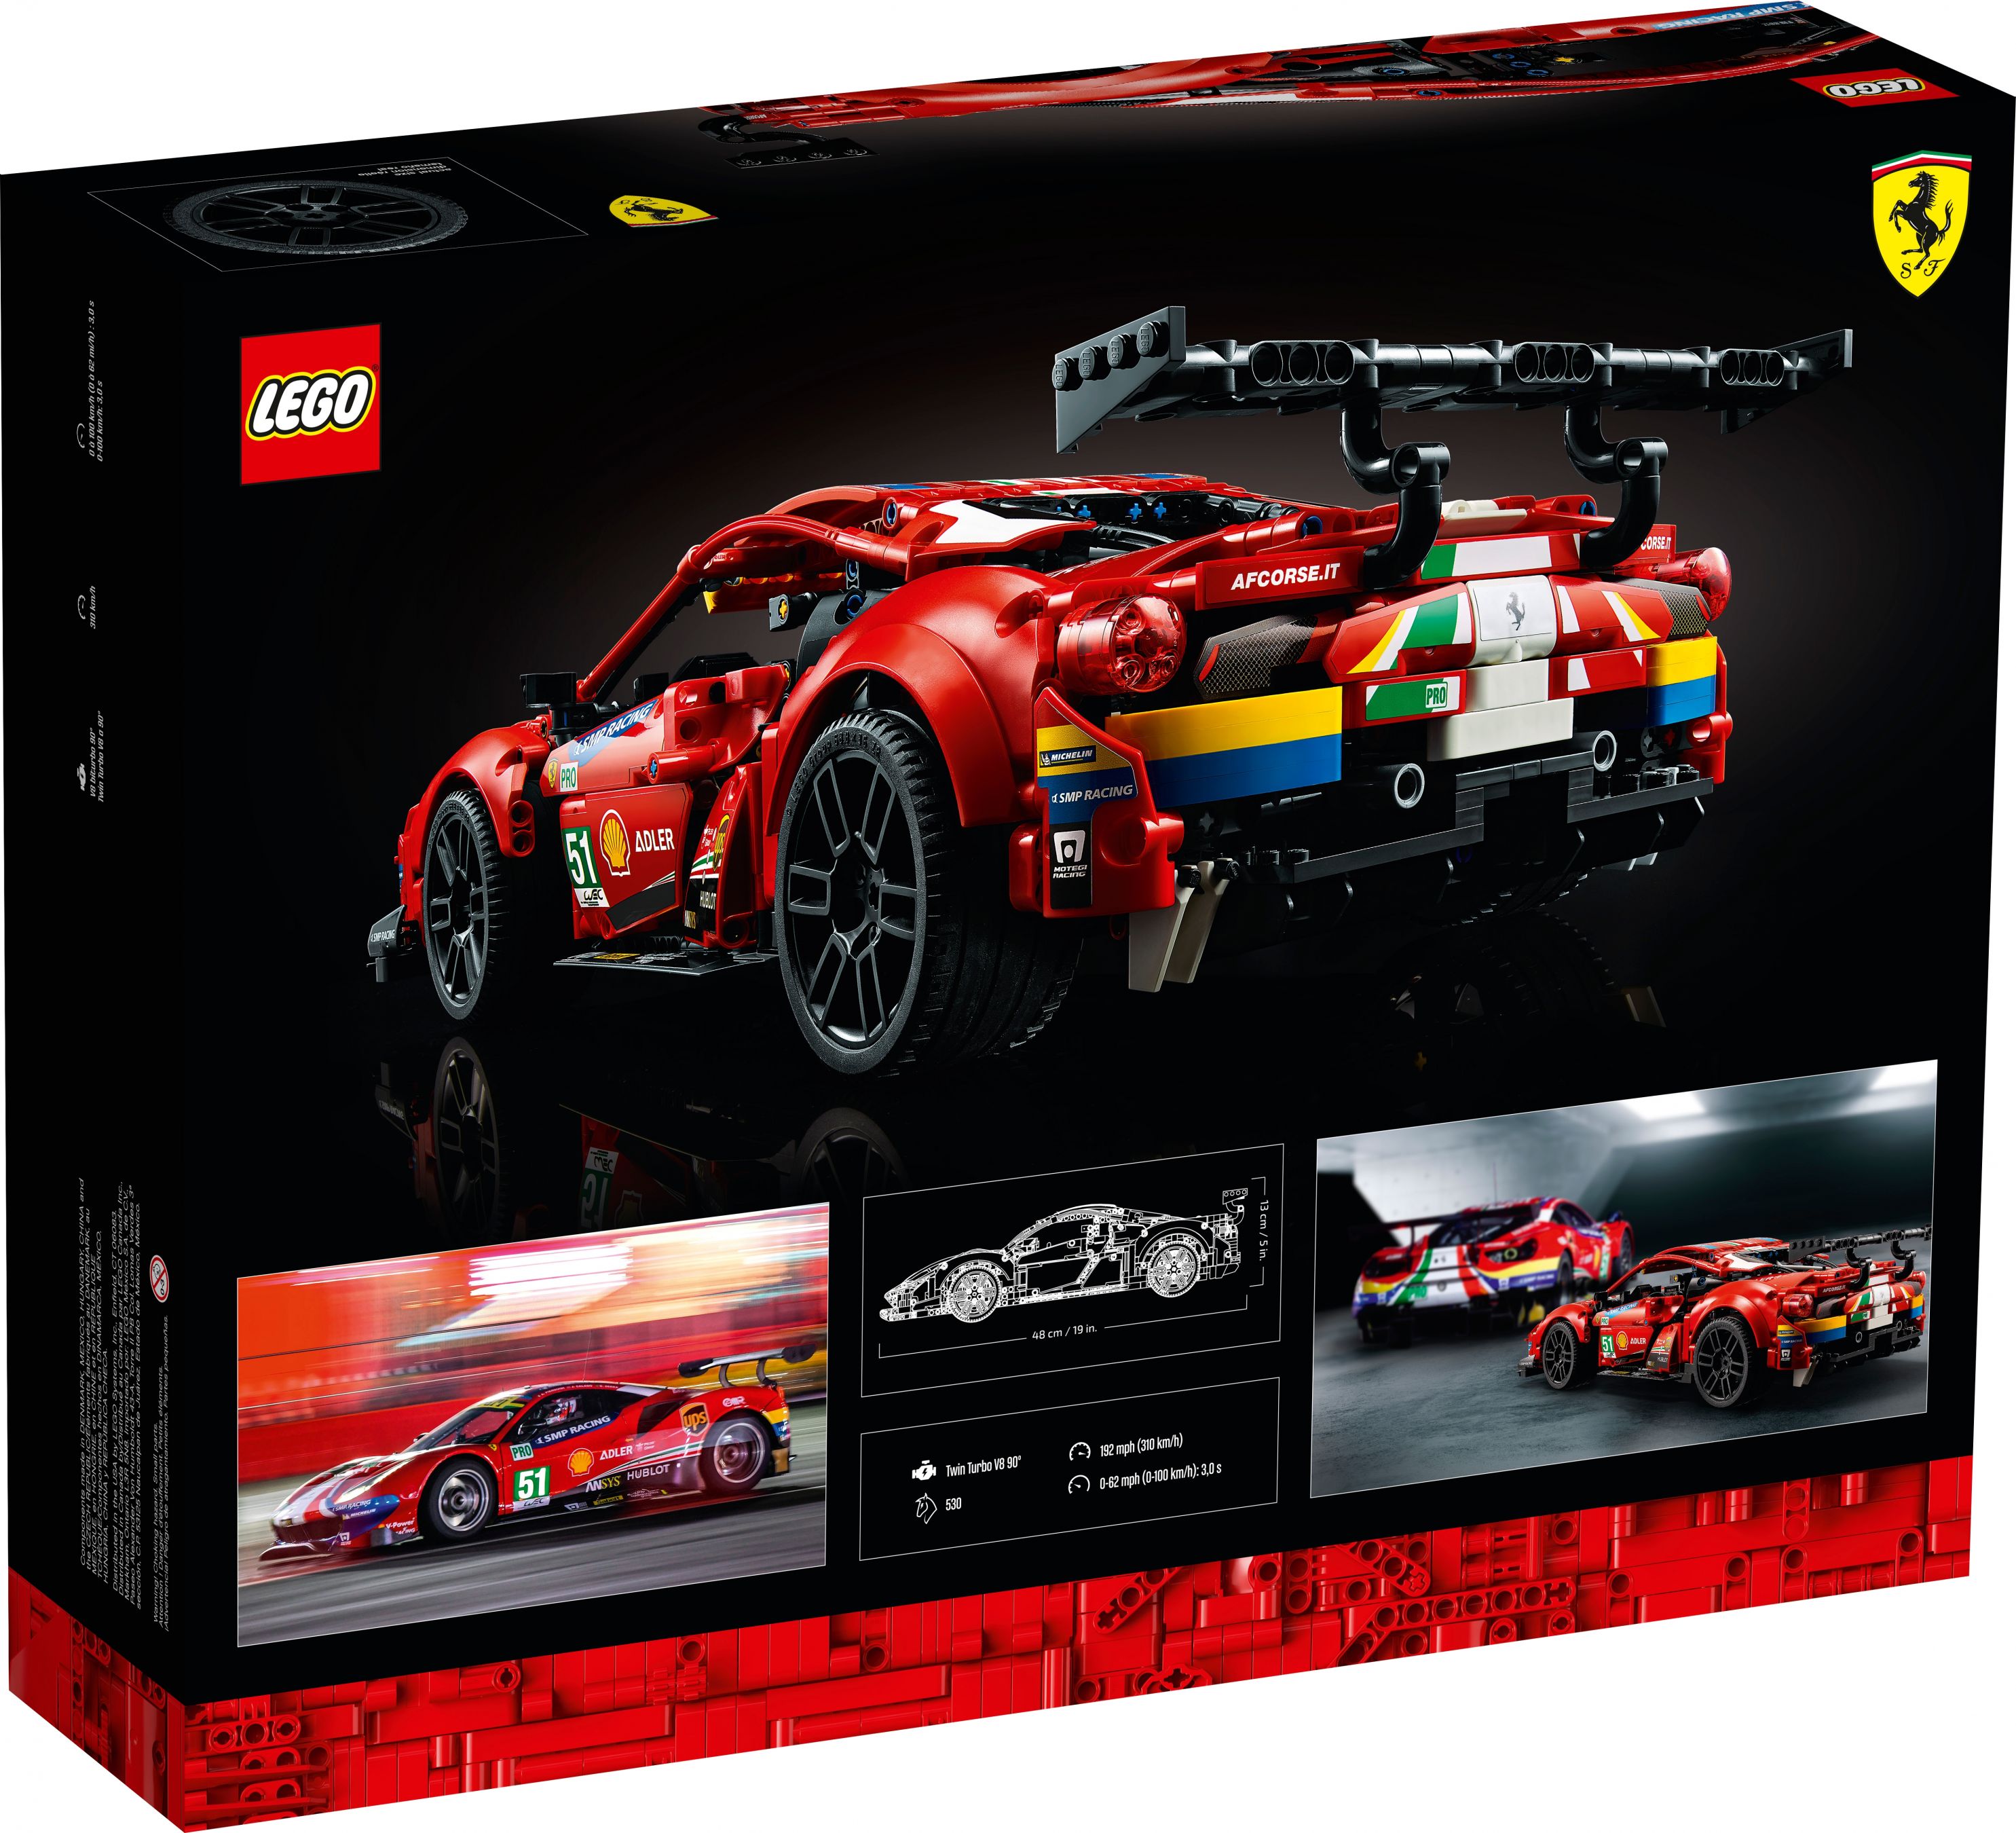 LEGO Technic 42125 Ferrari 488 GTE “AF Corse #51” LEGO_42125_alt5.jpg